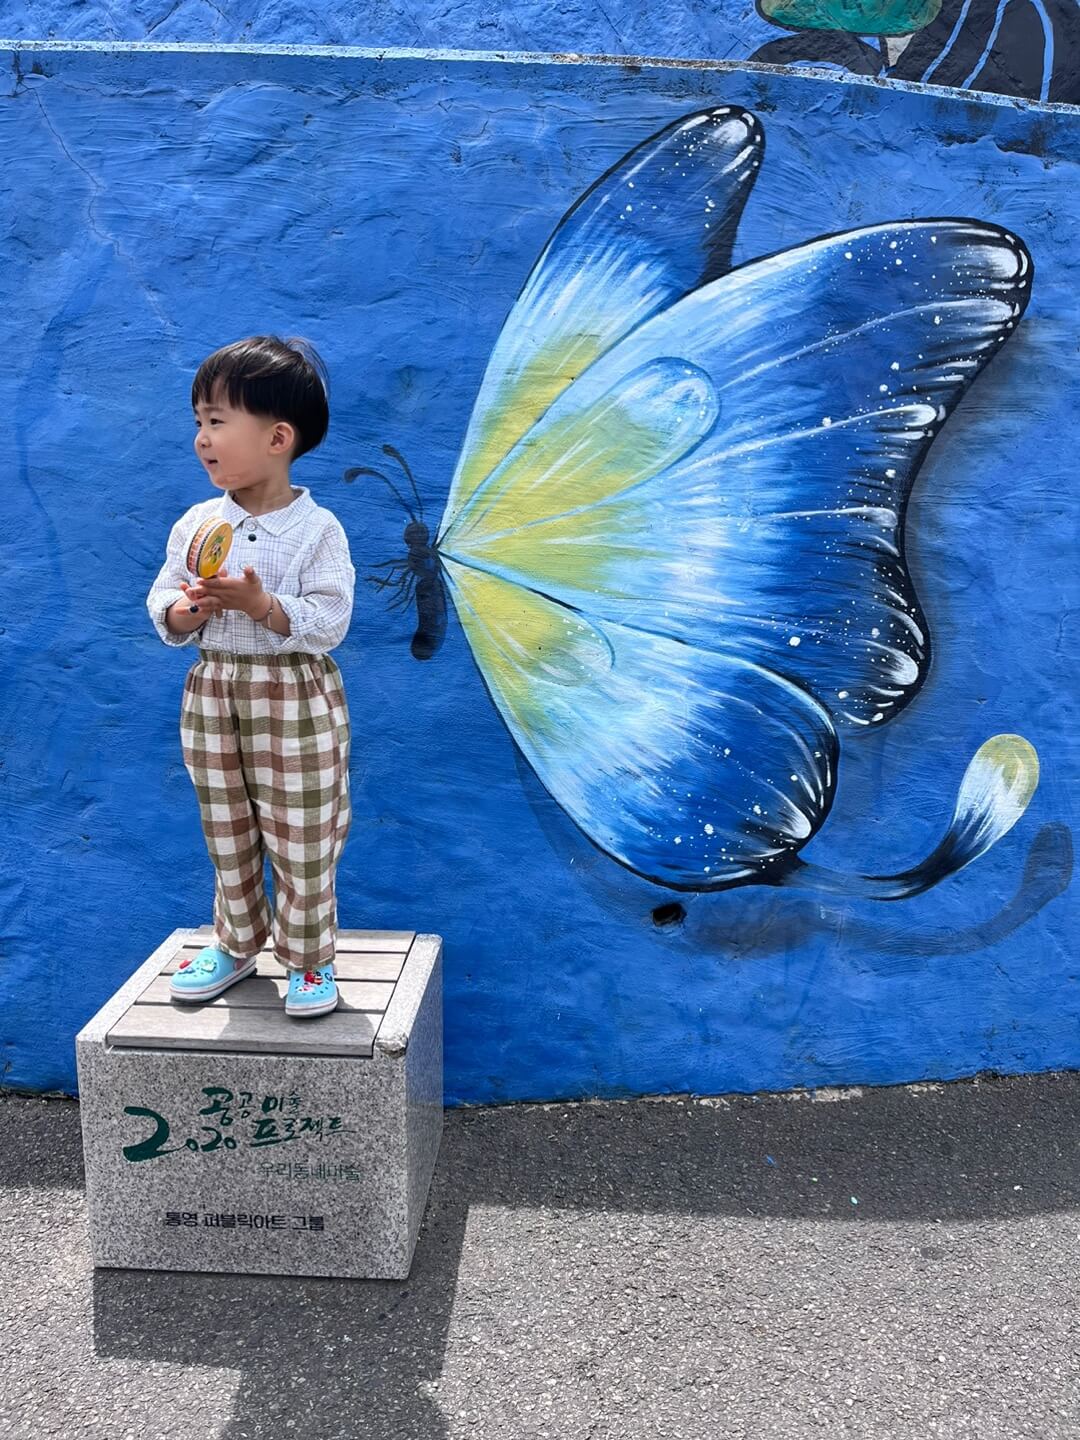 동피랑 벽화마을 나비가 그려진 벽화앞에서 찍은 저의 아들 사진입니다